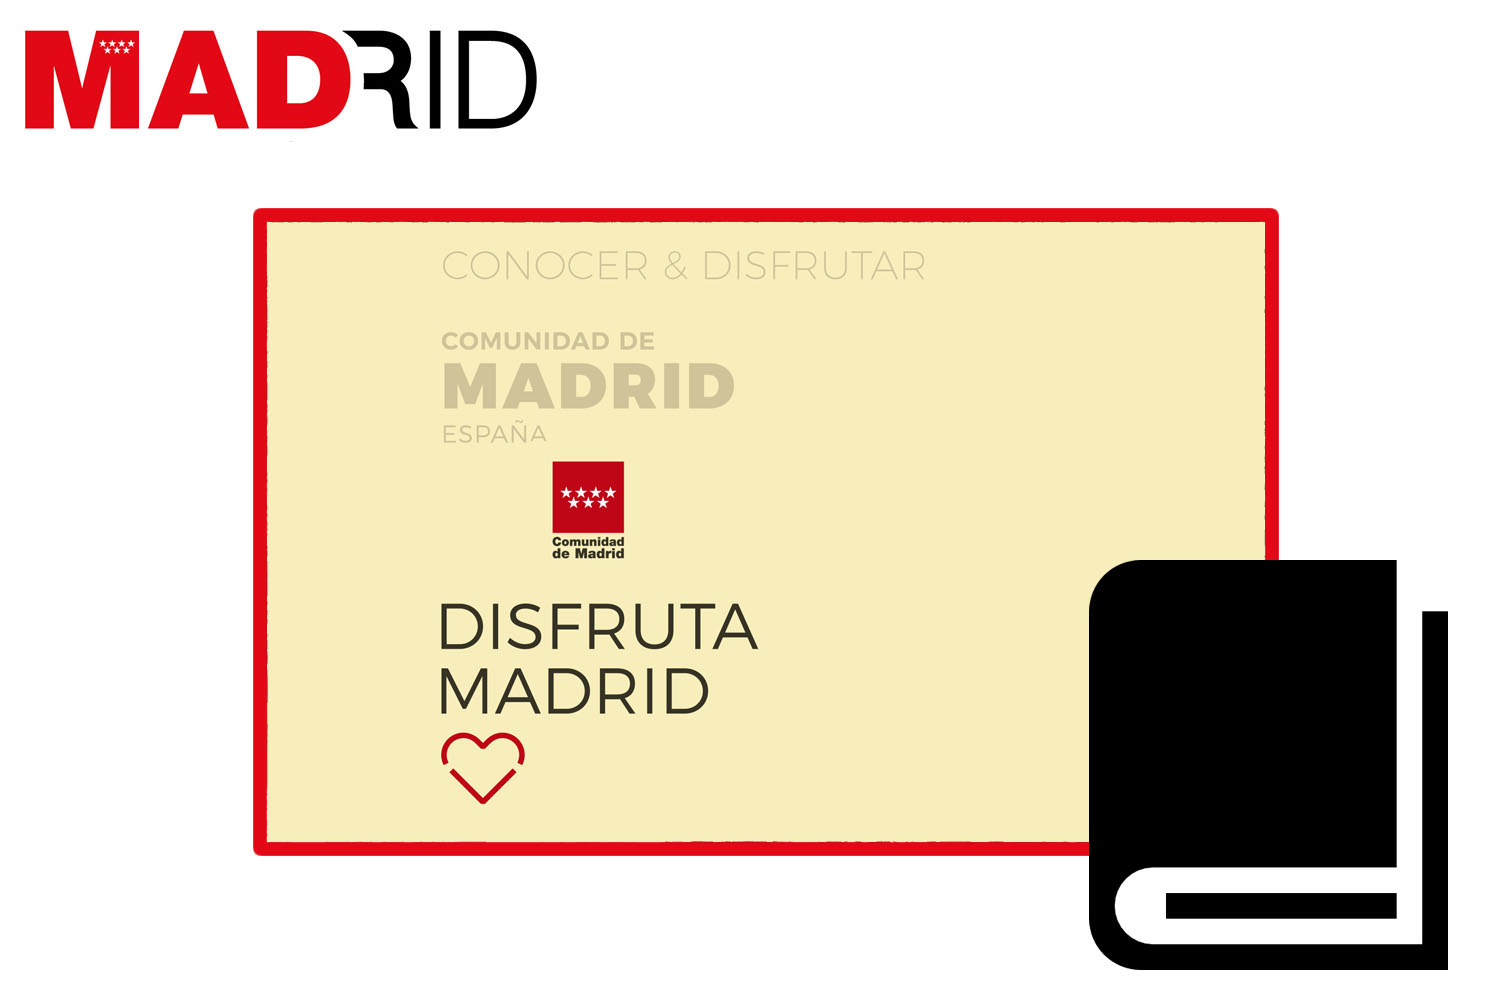 Madrid Region of Madrid Spain. Disfruta Madrid